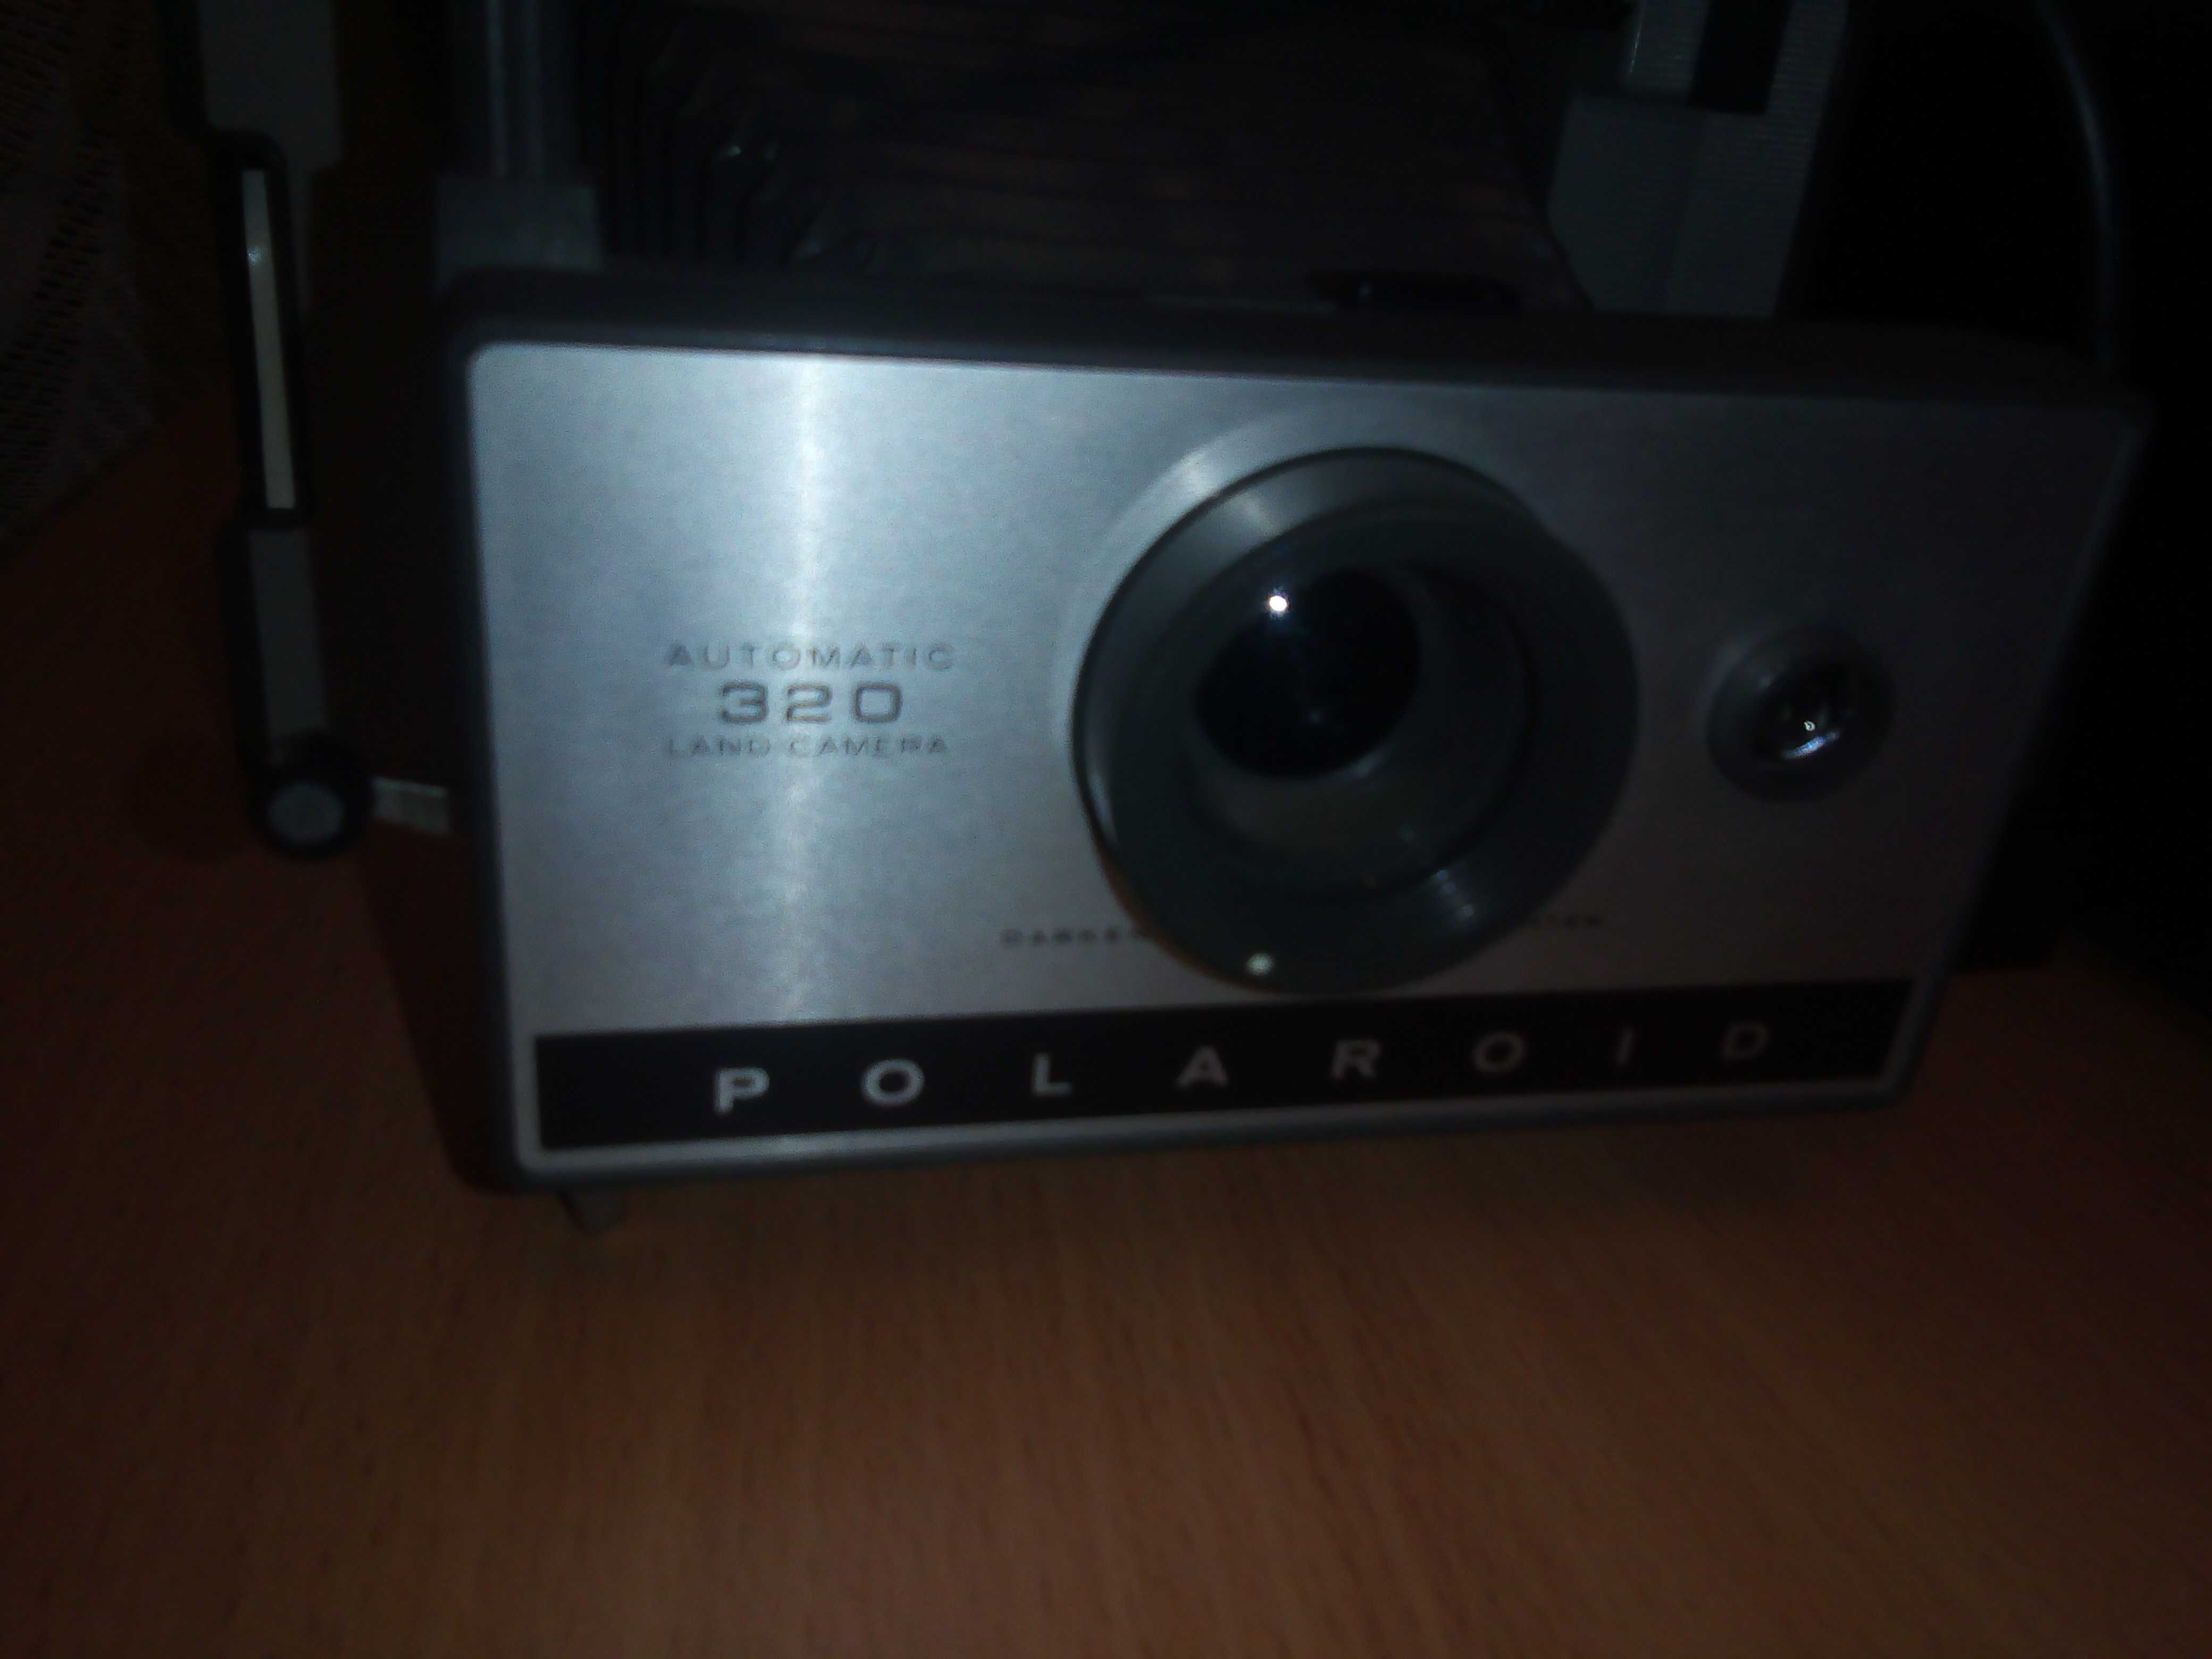 Polaroid 320 Land Camera